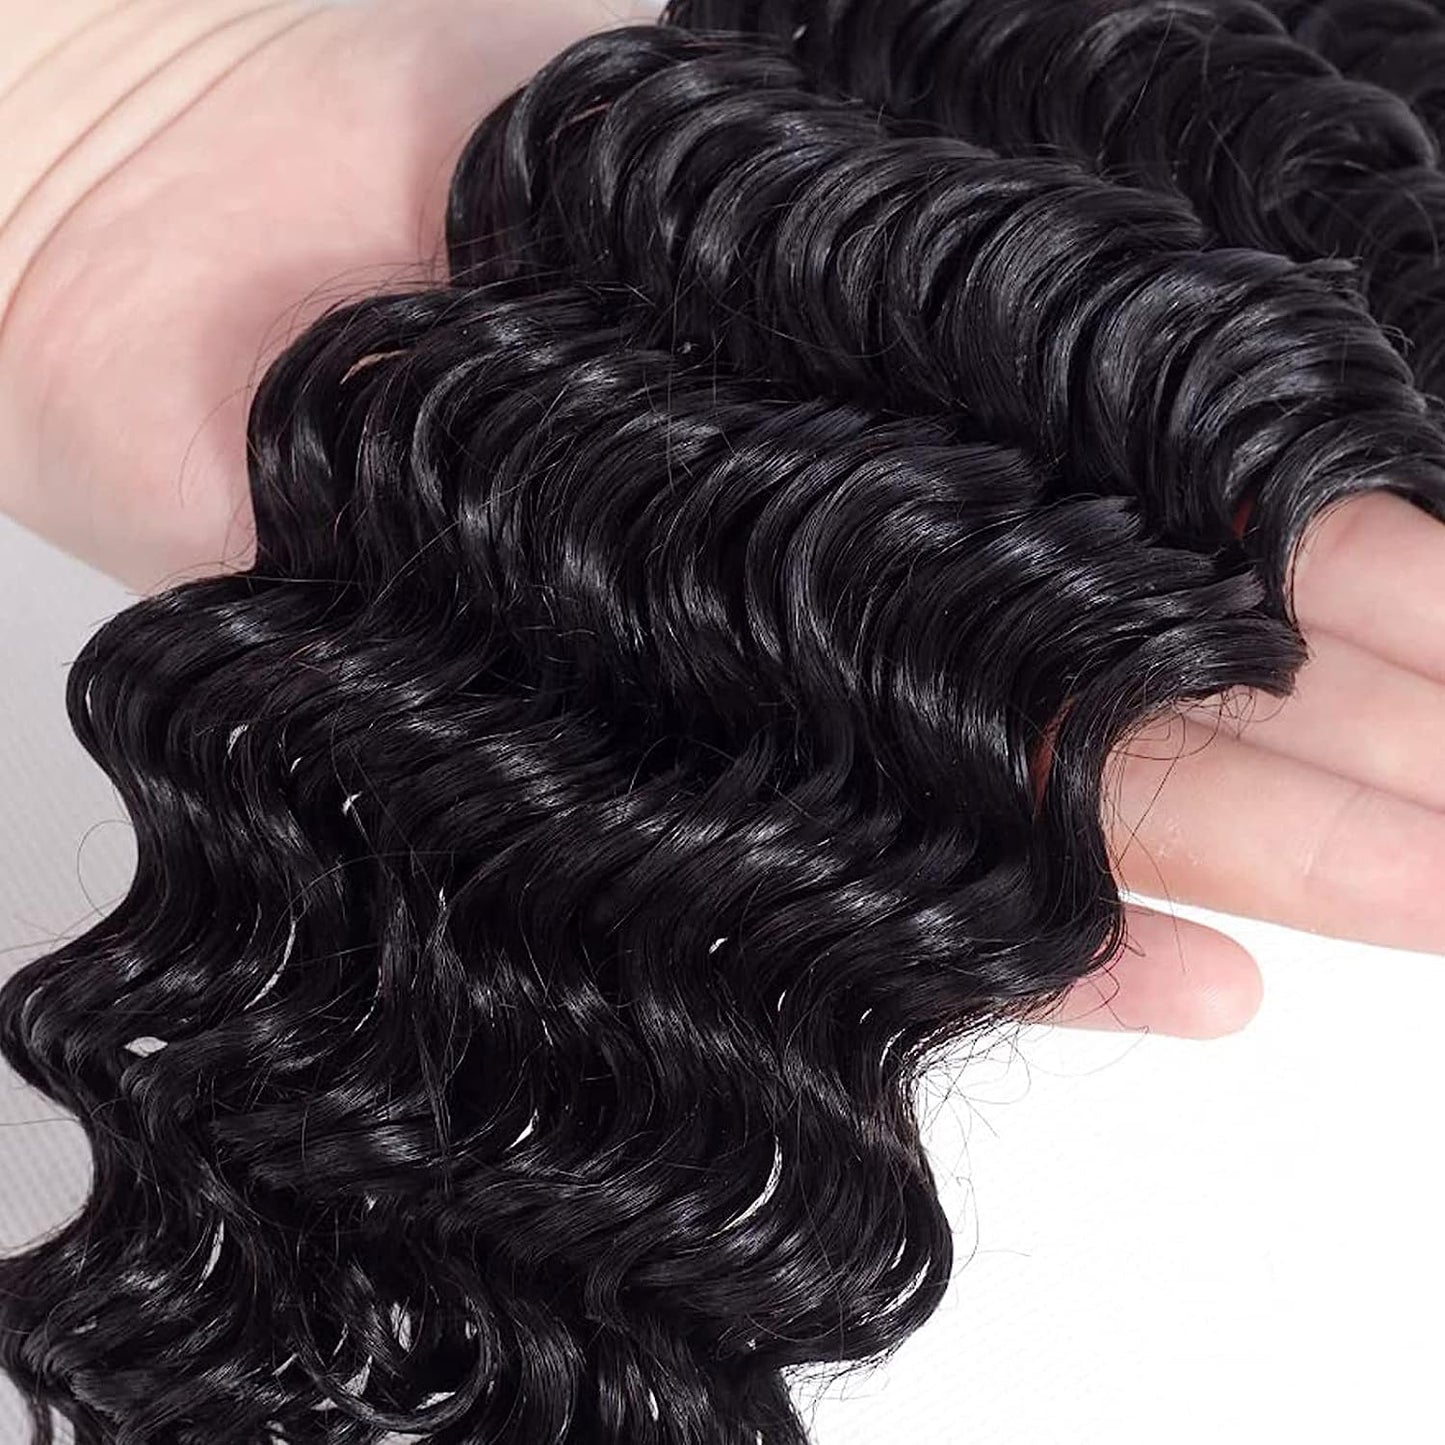 Brazilian Virgin Human Hair 12A Weft Weave Bundles 300g Deep Wave